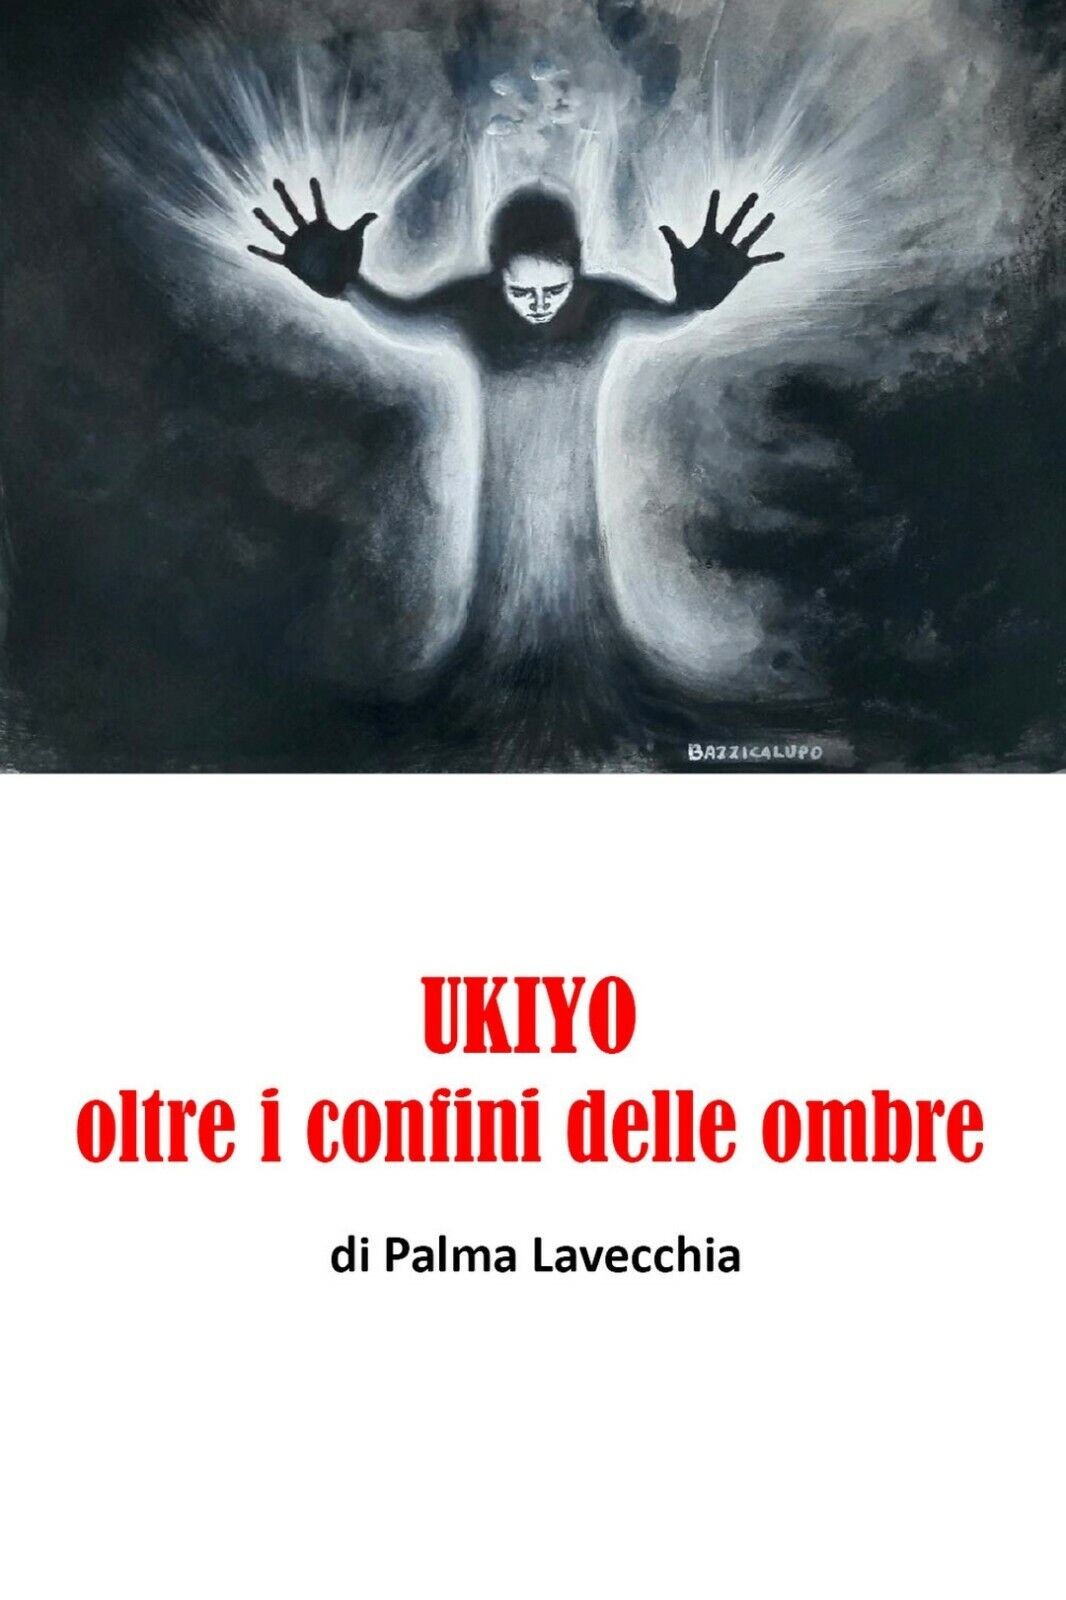 UKIYO, oltre i confini della morte  di Palma Lavecchia,  2019,  Youcanprint